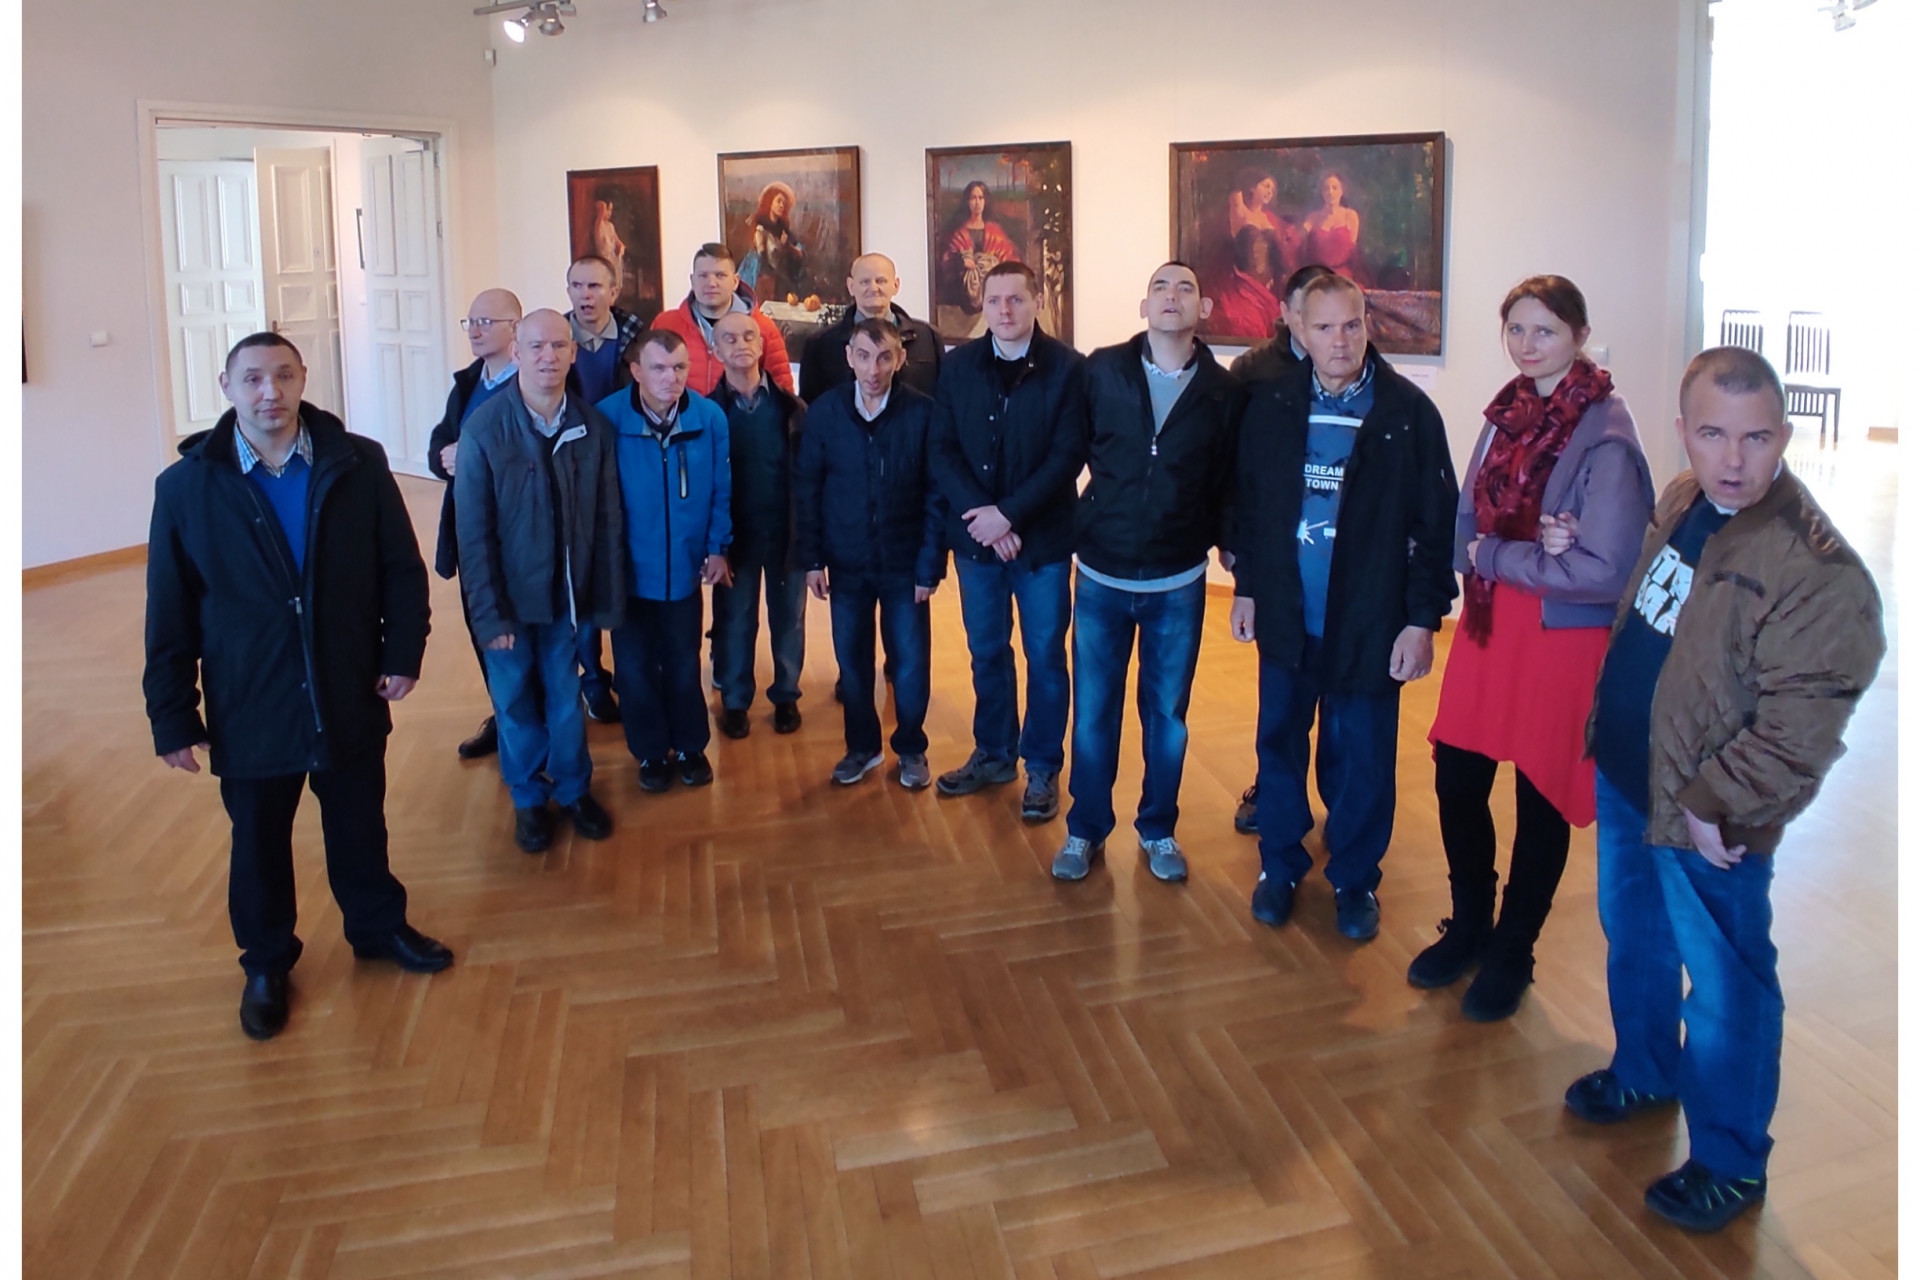 Zdjęcie grupowe podopiecznych wraz z terapeutami w galerii na tle monumentalnych obrazów stacji Drogi Krzyżowej.